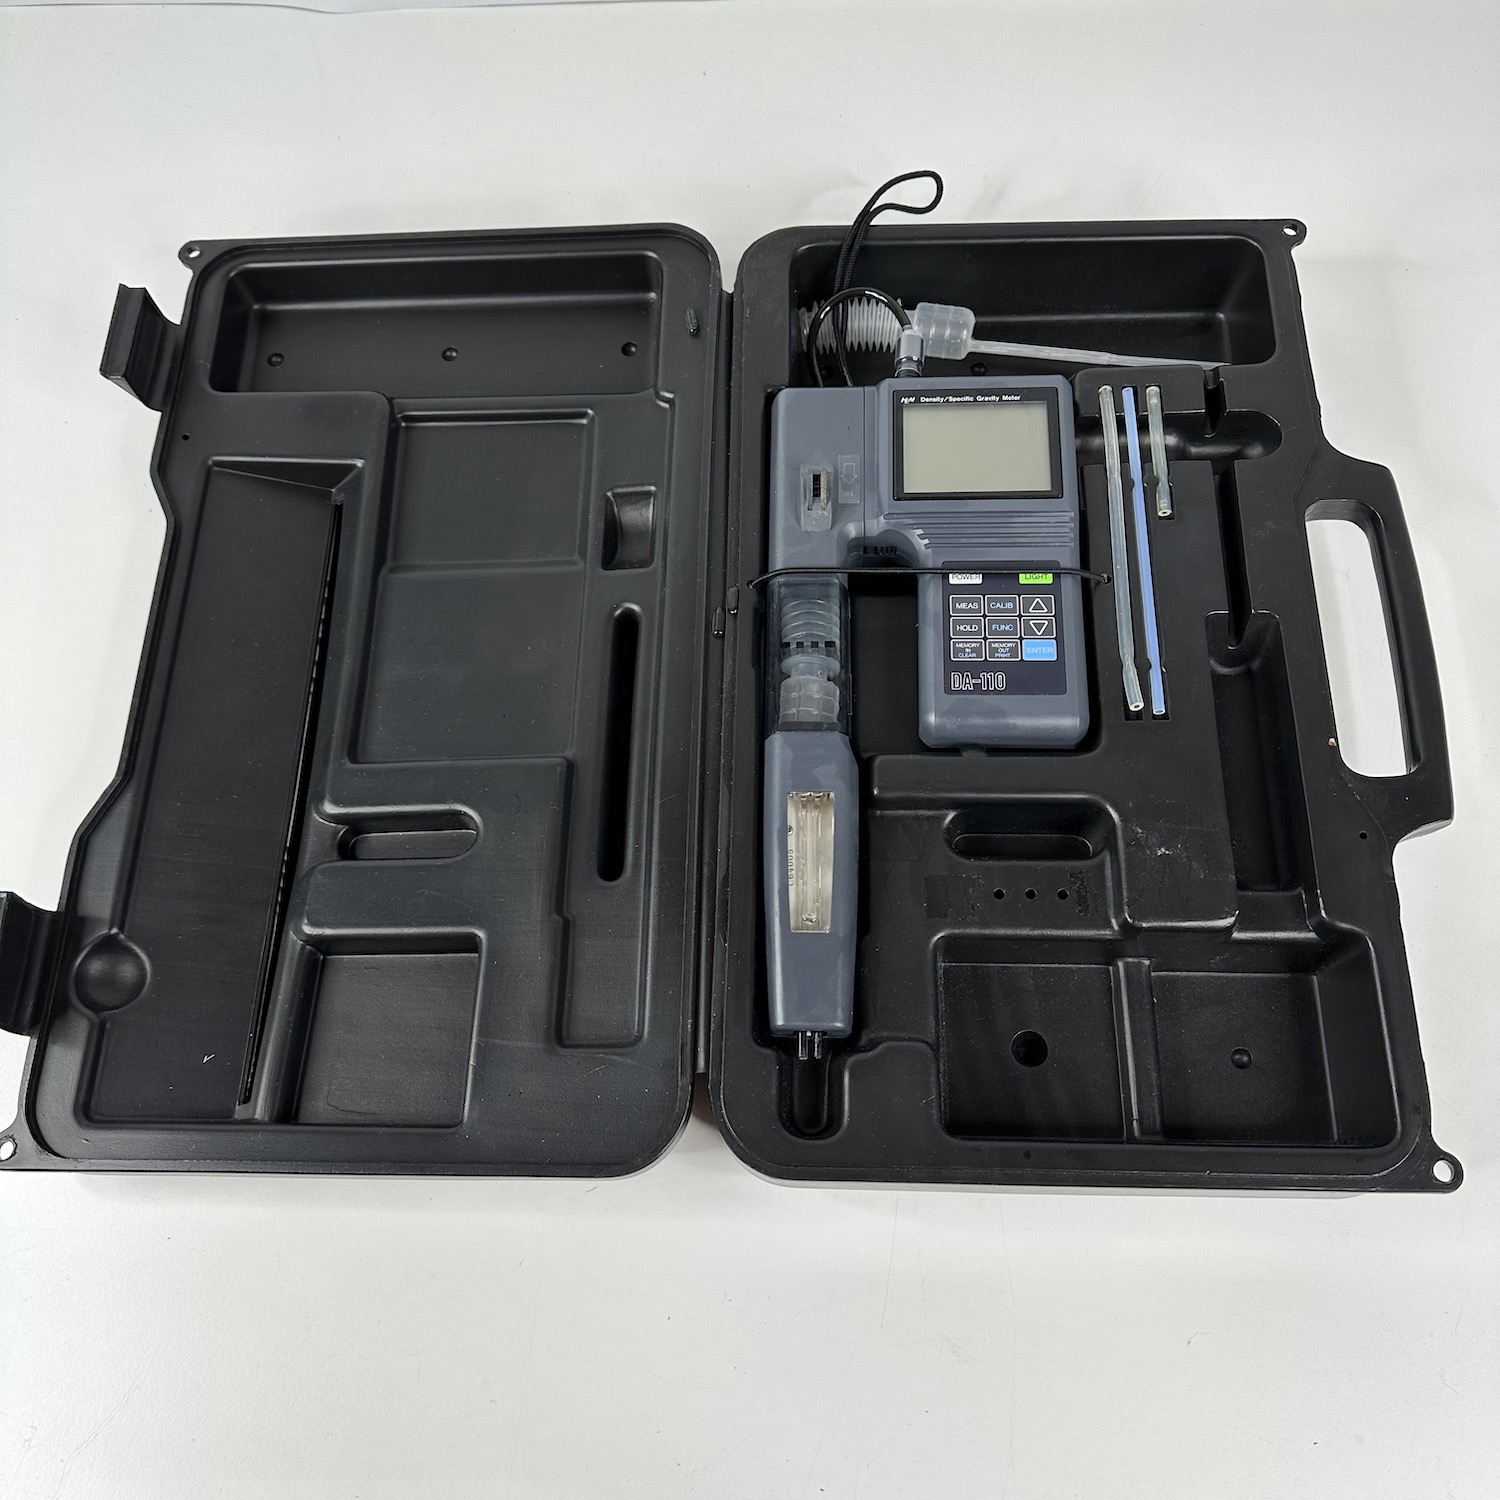 portable density meter | da110 | kyoto | kem | metter toledo | specific gravity meter